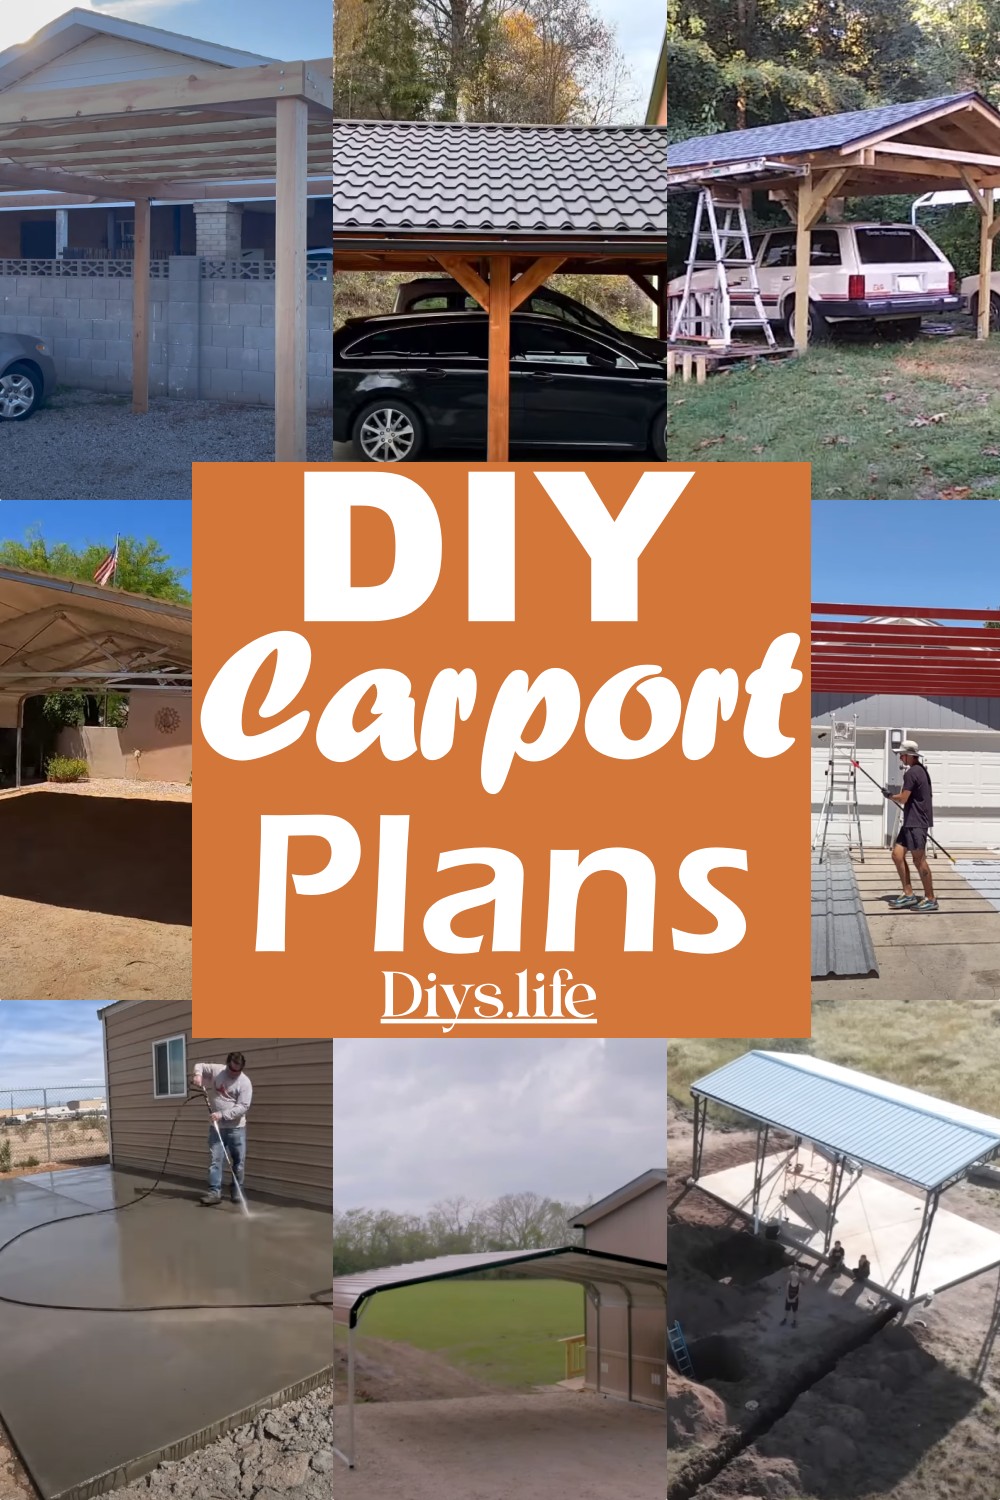 DIY Carport Plans